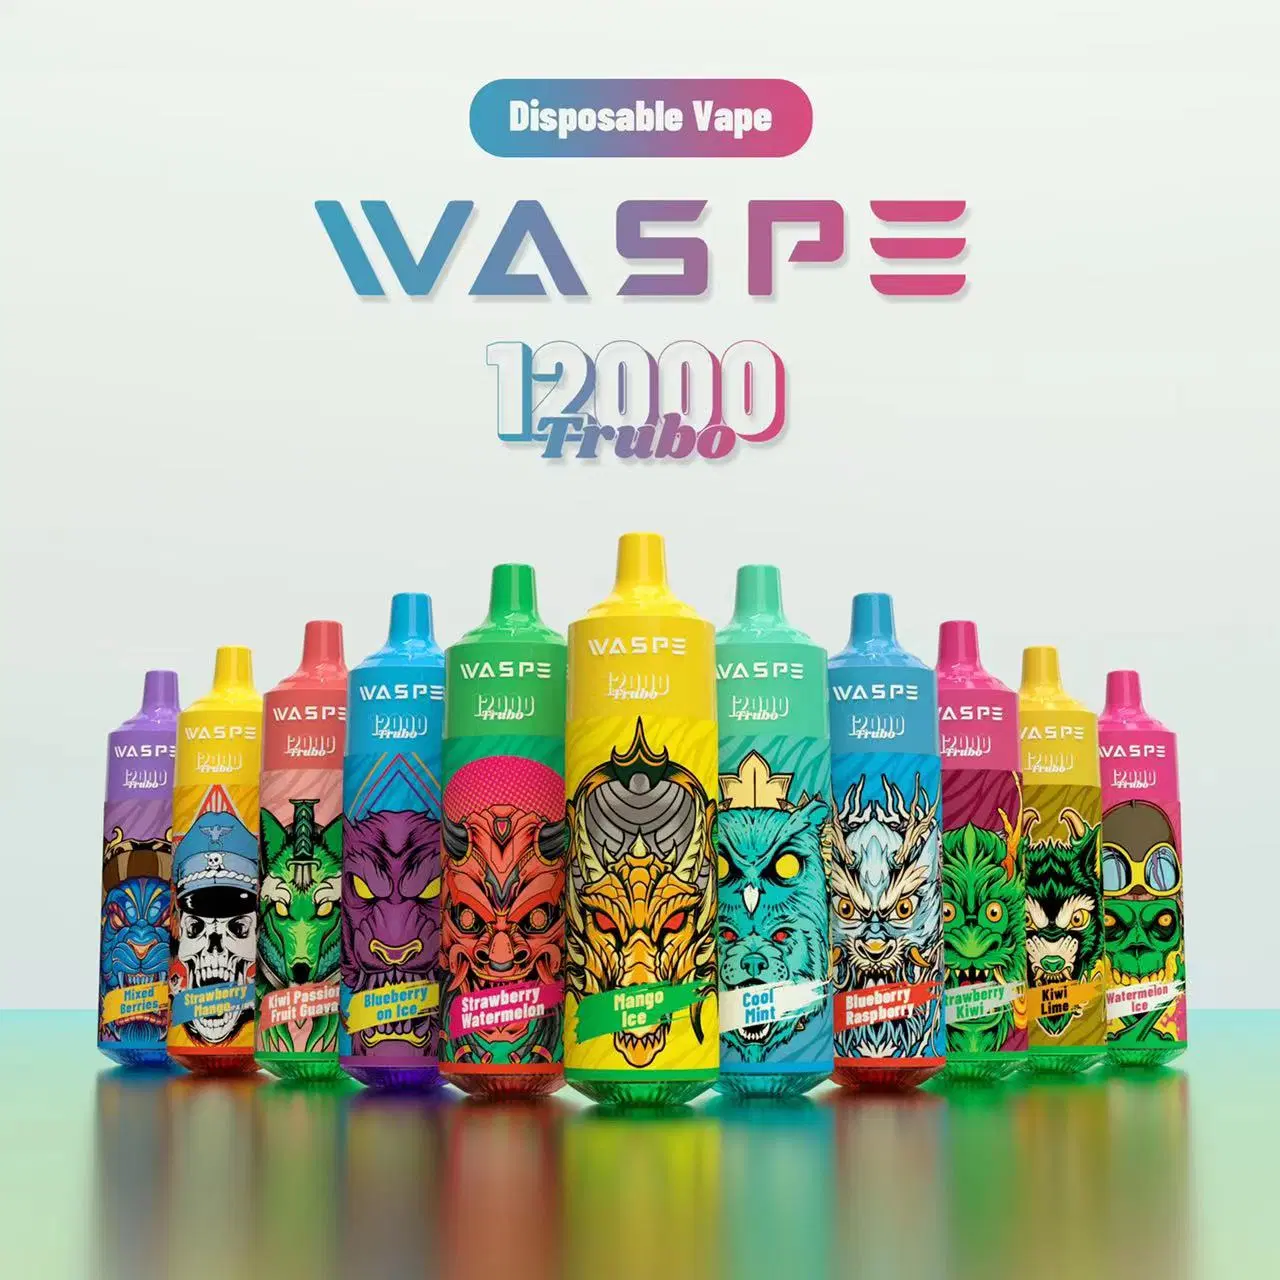 Waspe 12000 Puffs Disposable Vape Pen Puff 12K Rechargeable Wholesales E Cigarette Vape